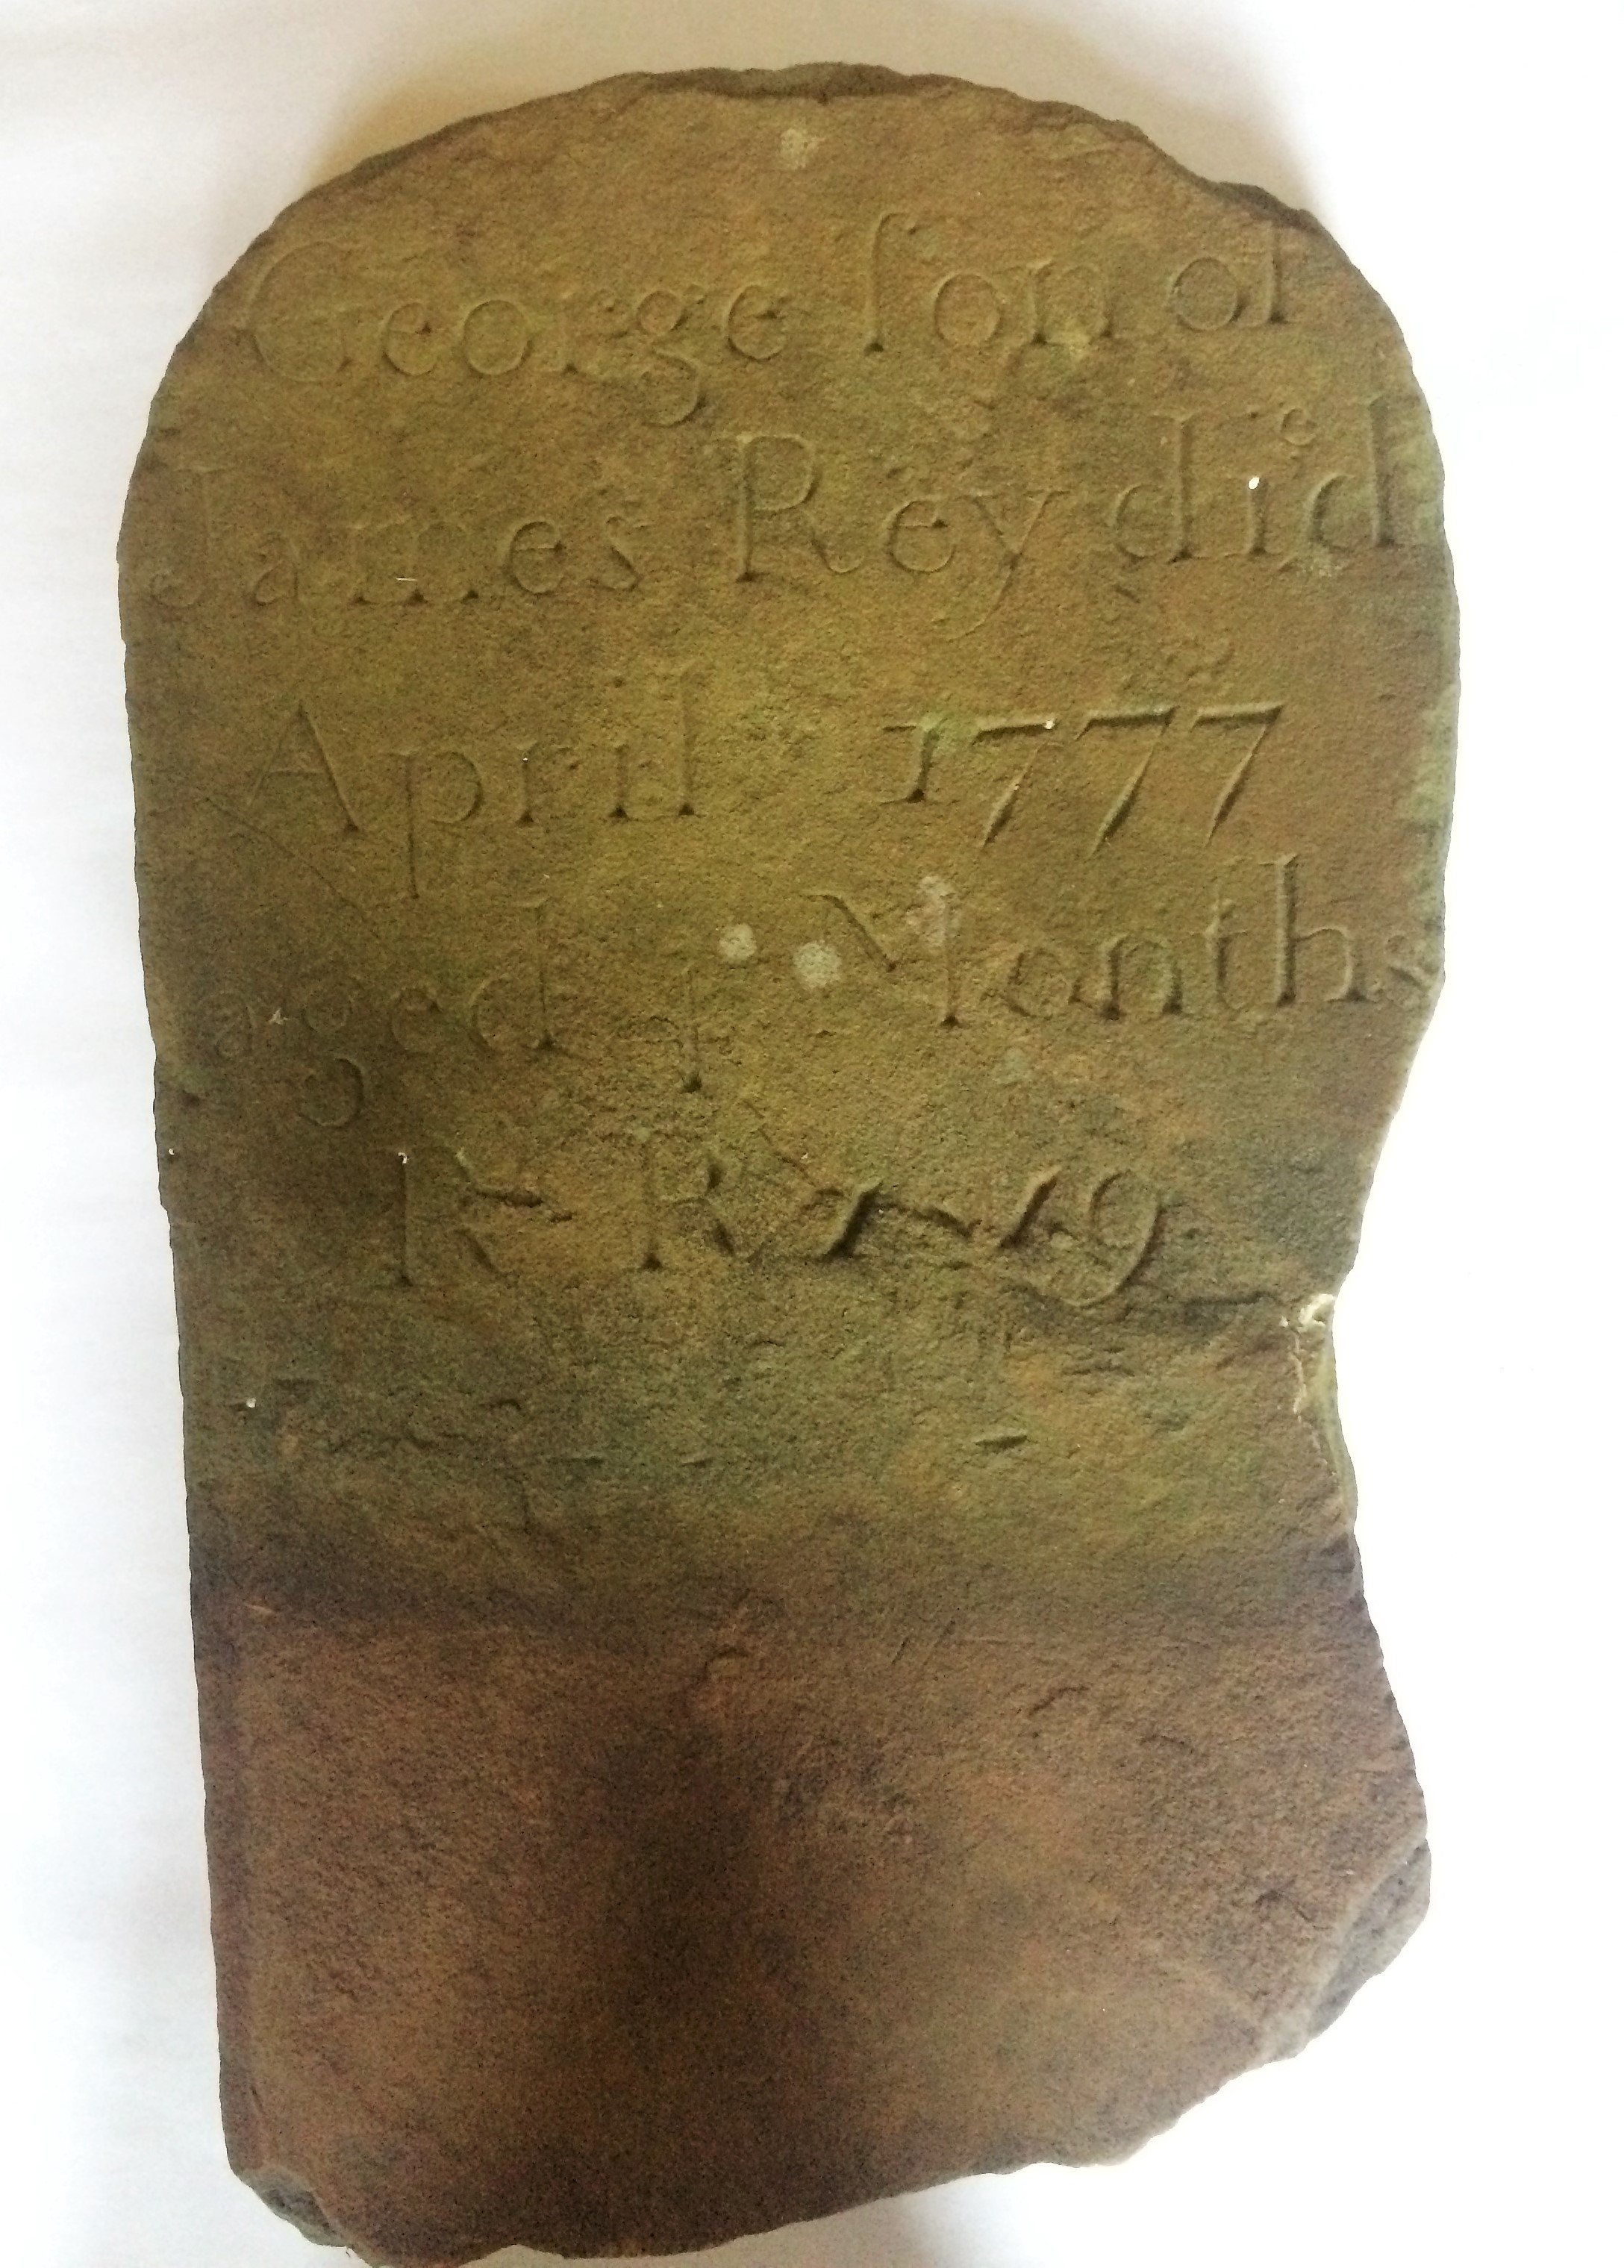 Grabstein "George" († 1777) (Museum für Sepulkralkultur CC BY)